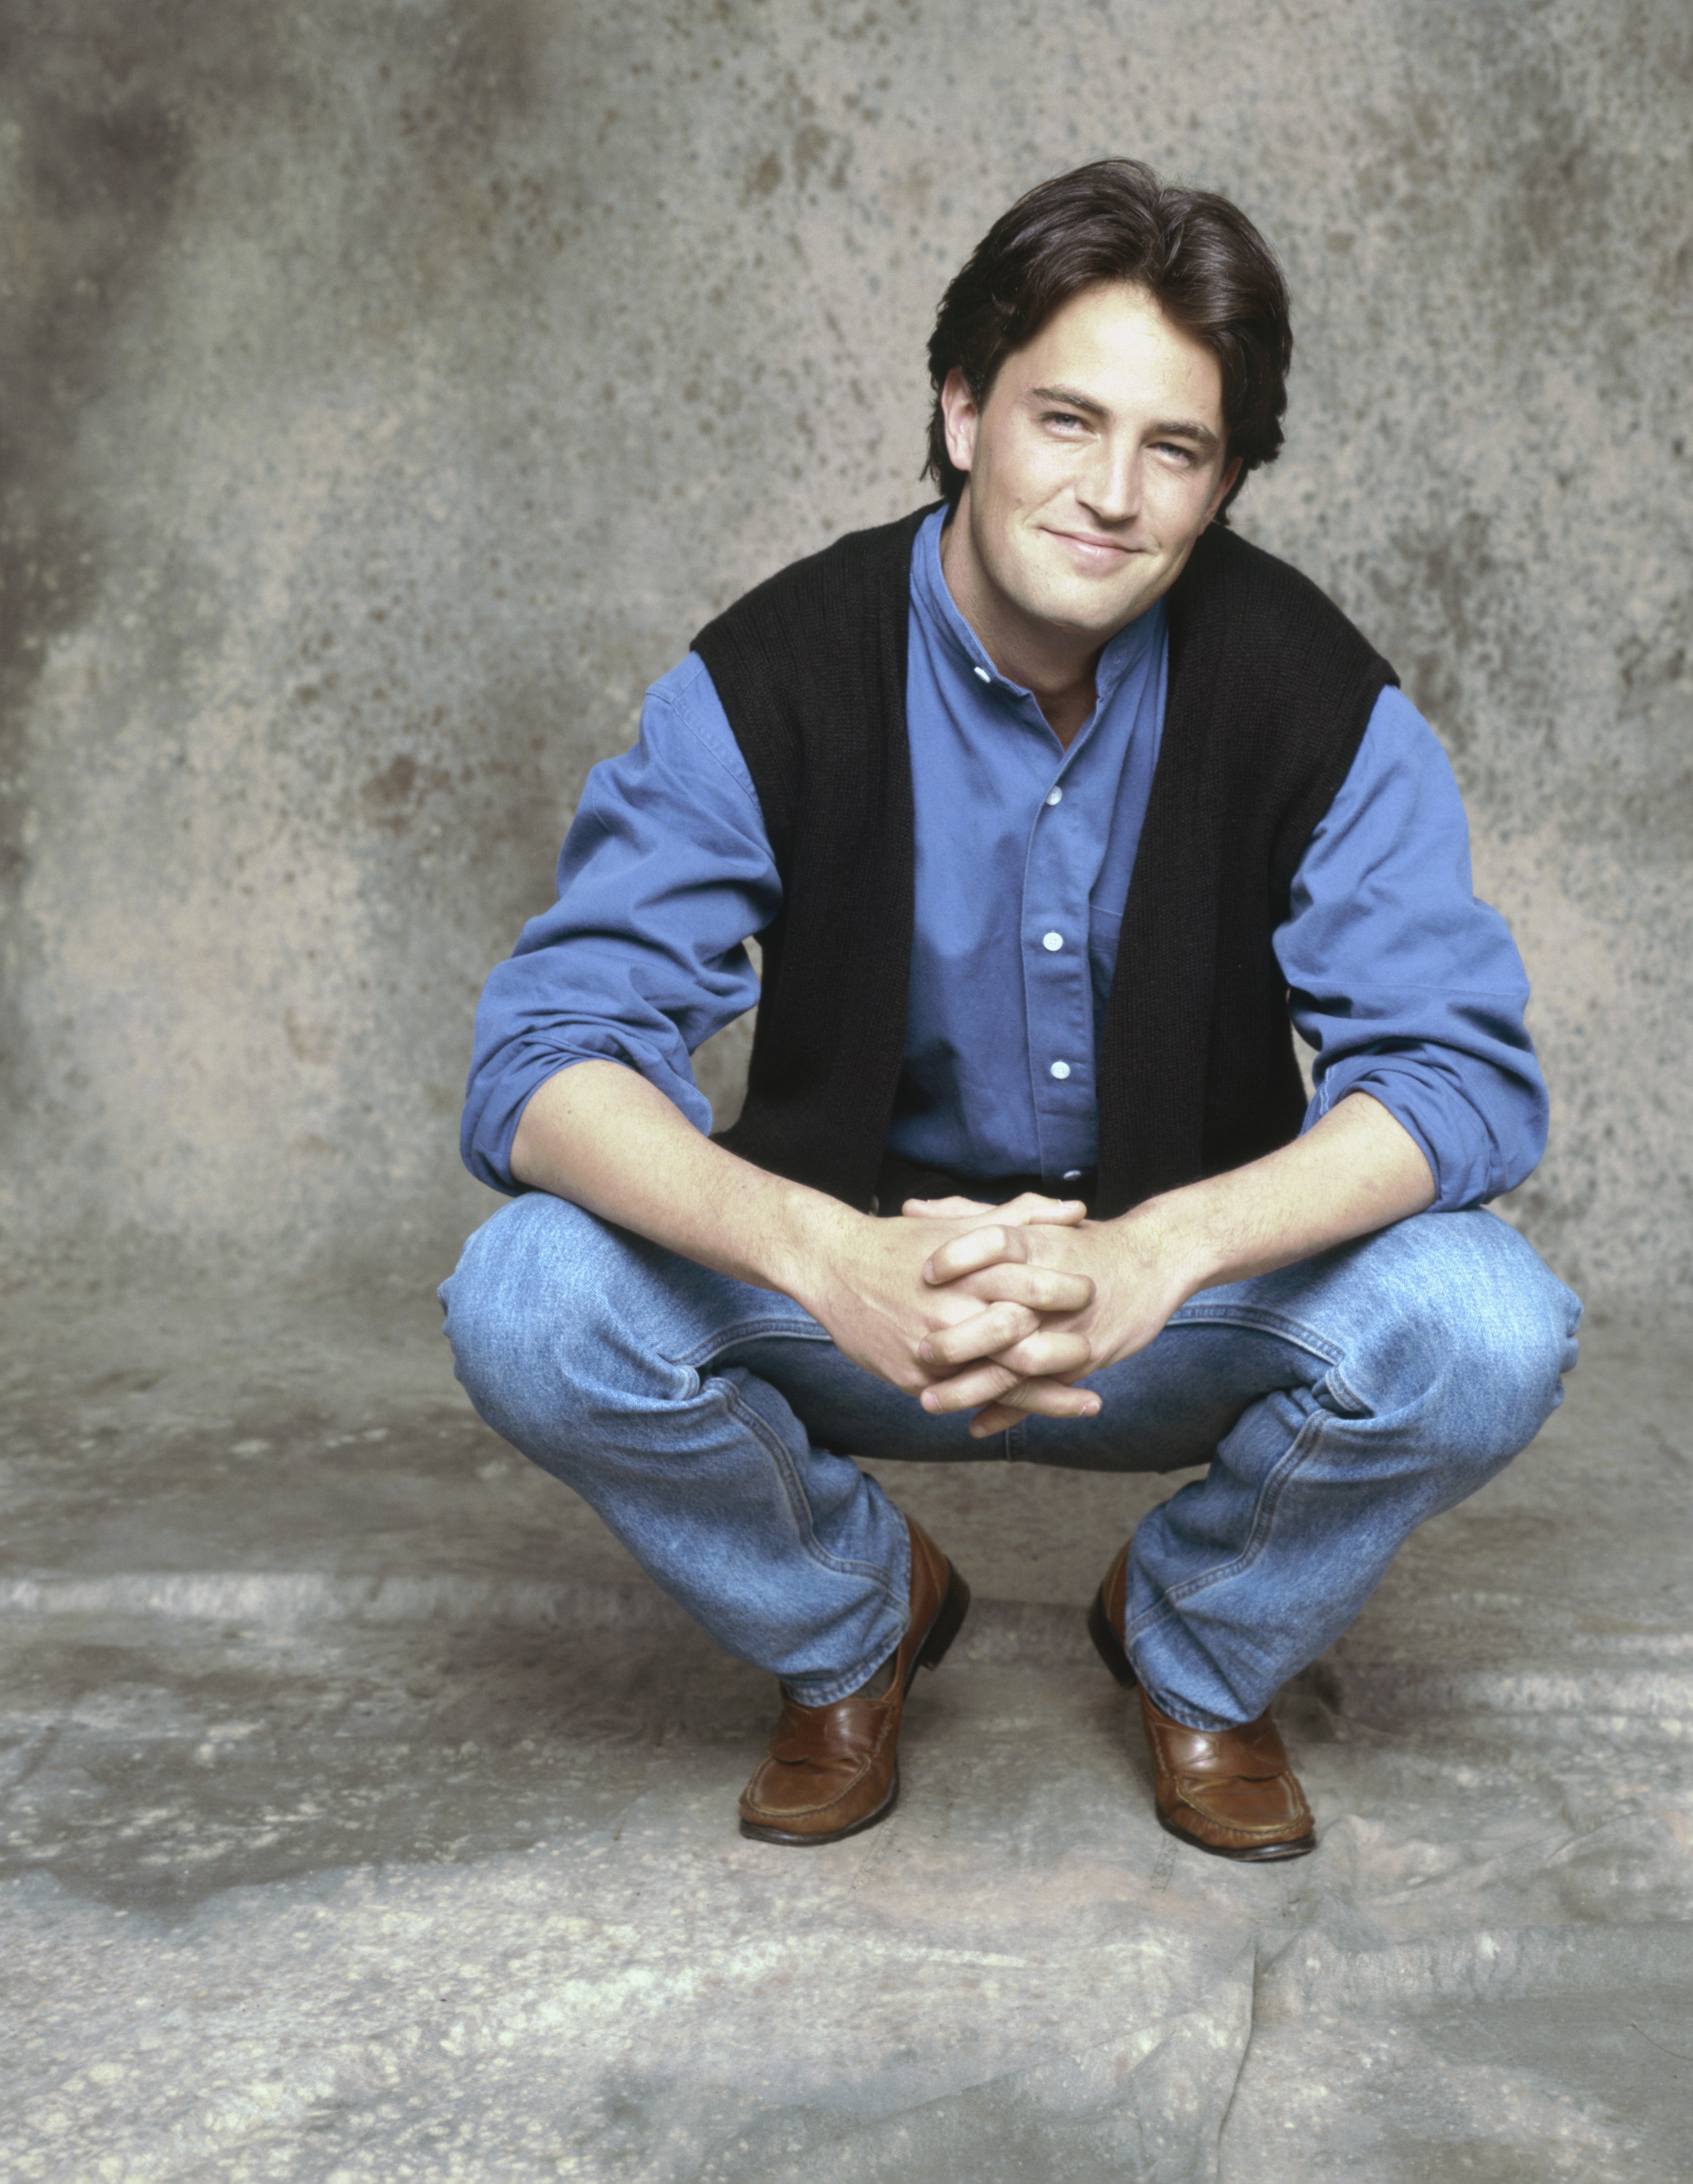 Der Schauspieler wurde vor allem durch seine Rolle als Chandler Bing in der Serie „Friends“ bekannt